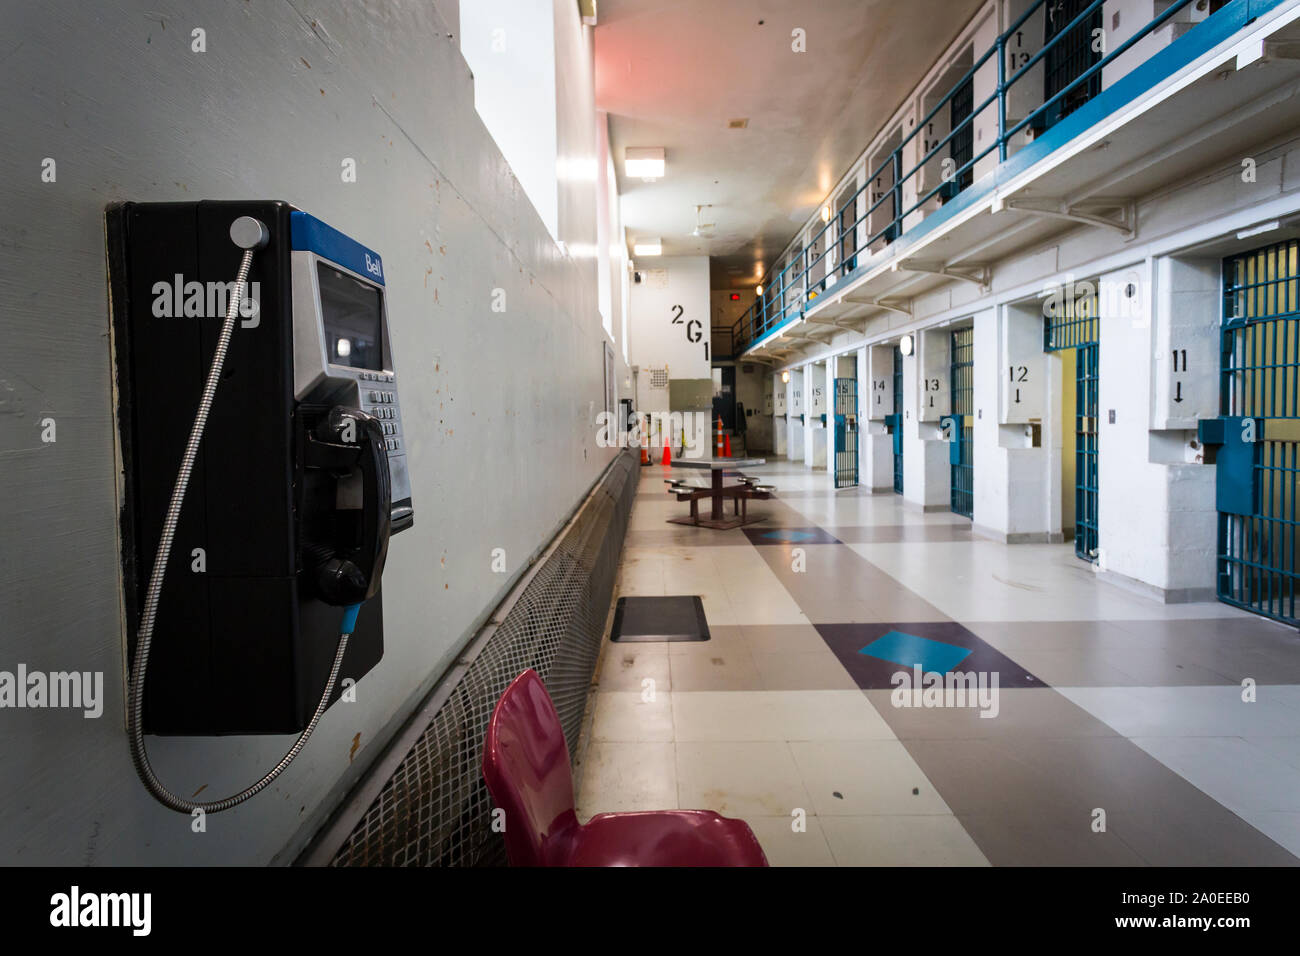 Telefon in einem Gefängnis Reihe der Gefängniszellen Kingston Justizvollzugsanstalt einen ehemaligen Hochsicherheitsgefängnis, Juni 1835 geöffnet und September jetzt Open 2013 fo geschlossen Stockfoto